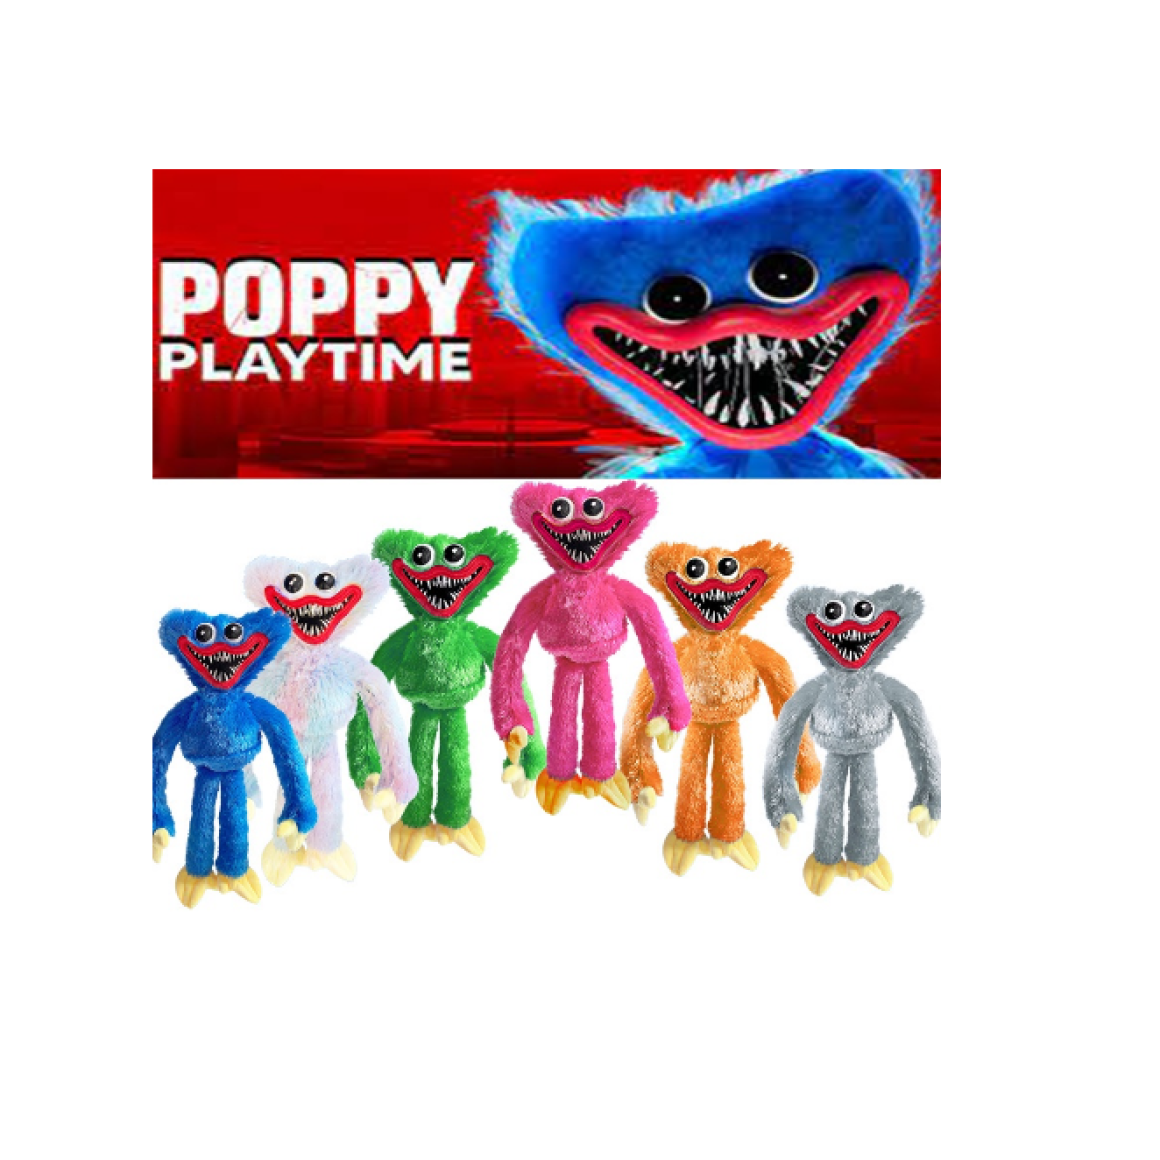 Poppy Playtime Jogo Brinquedos Boneco Pelúcia Huggy Wuggy Musical